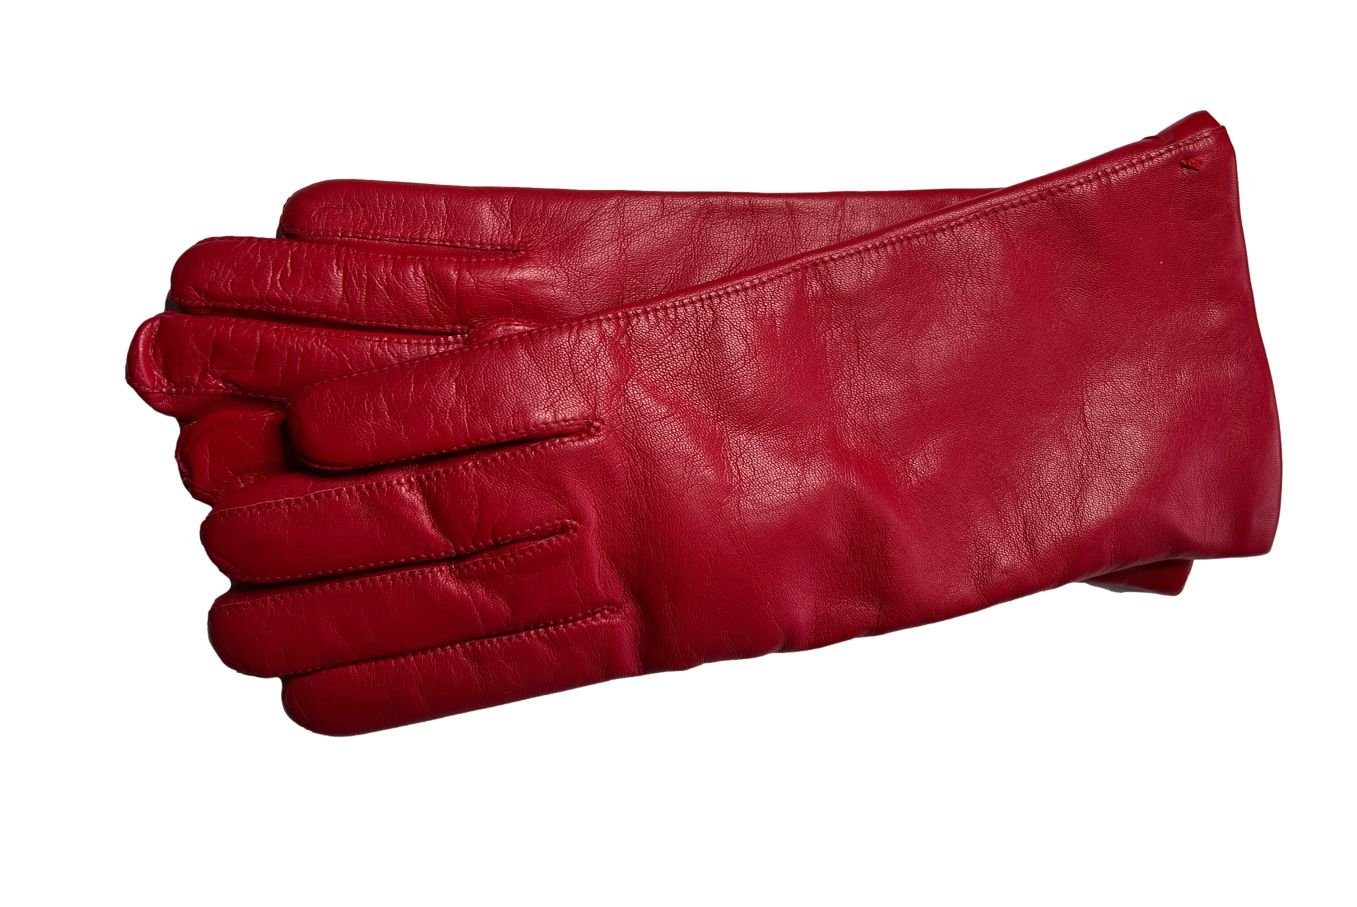 ESKA Lederhandschuhe Eska Lederhandschuh Donna rot | Handschuhe